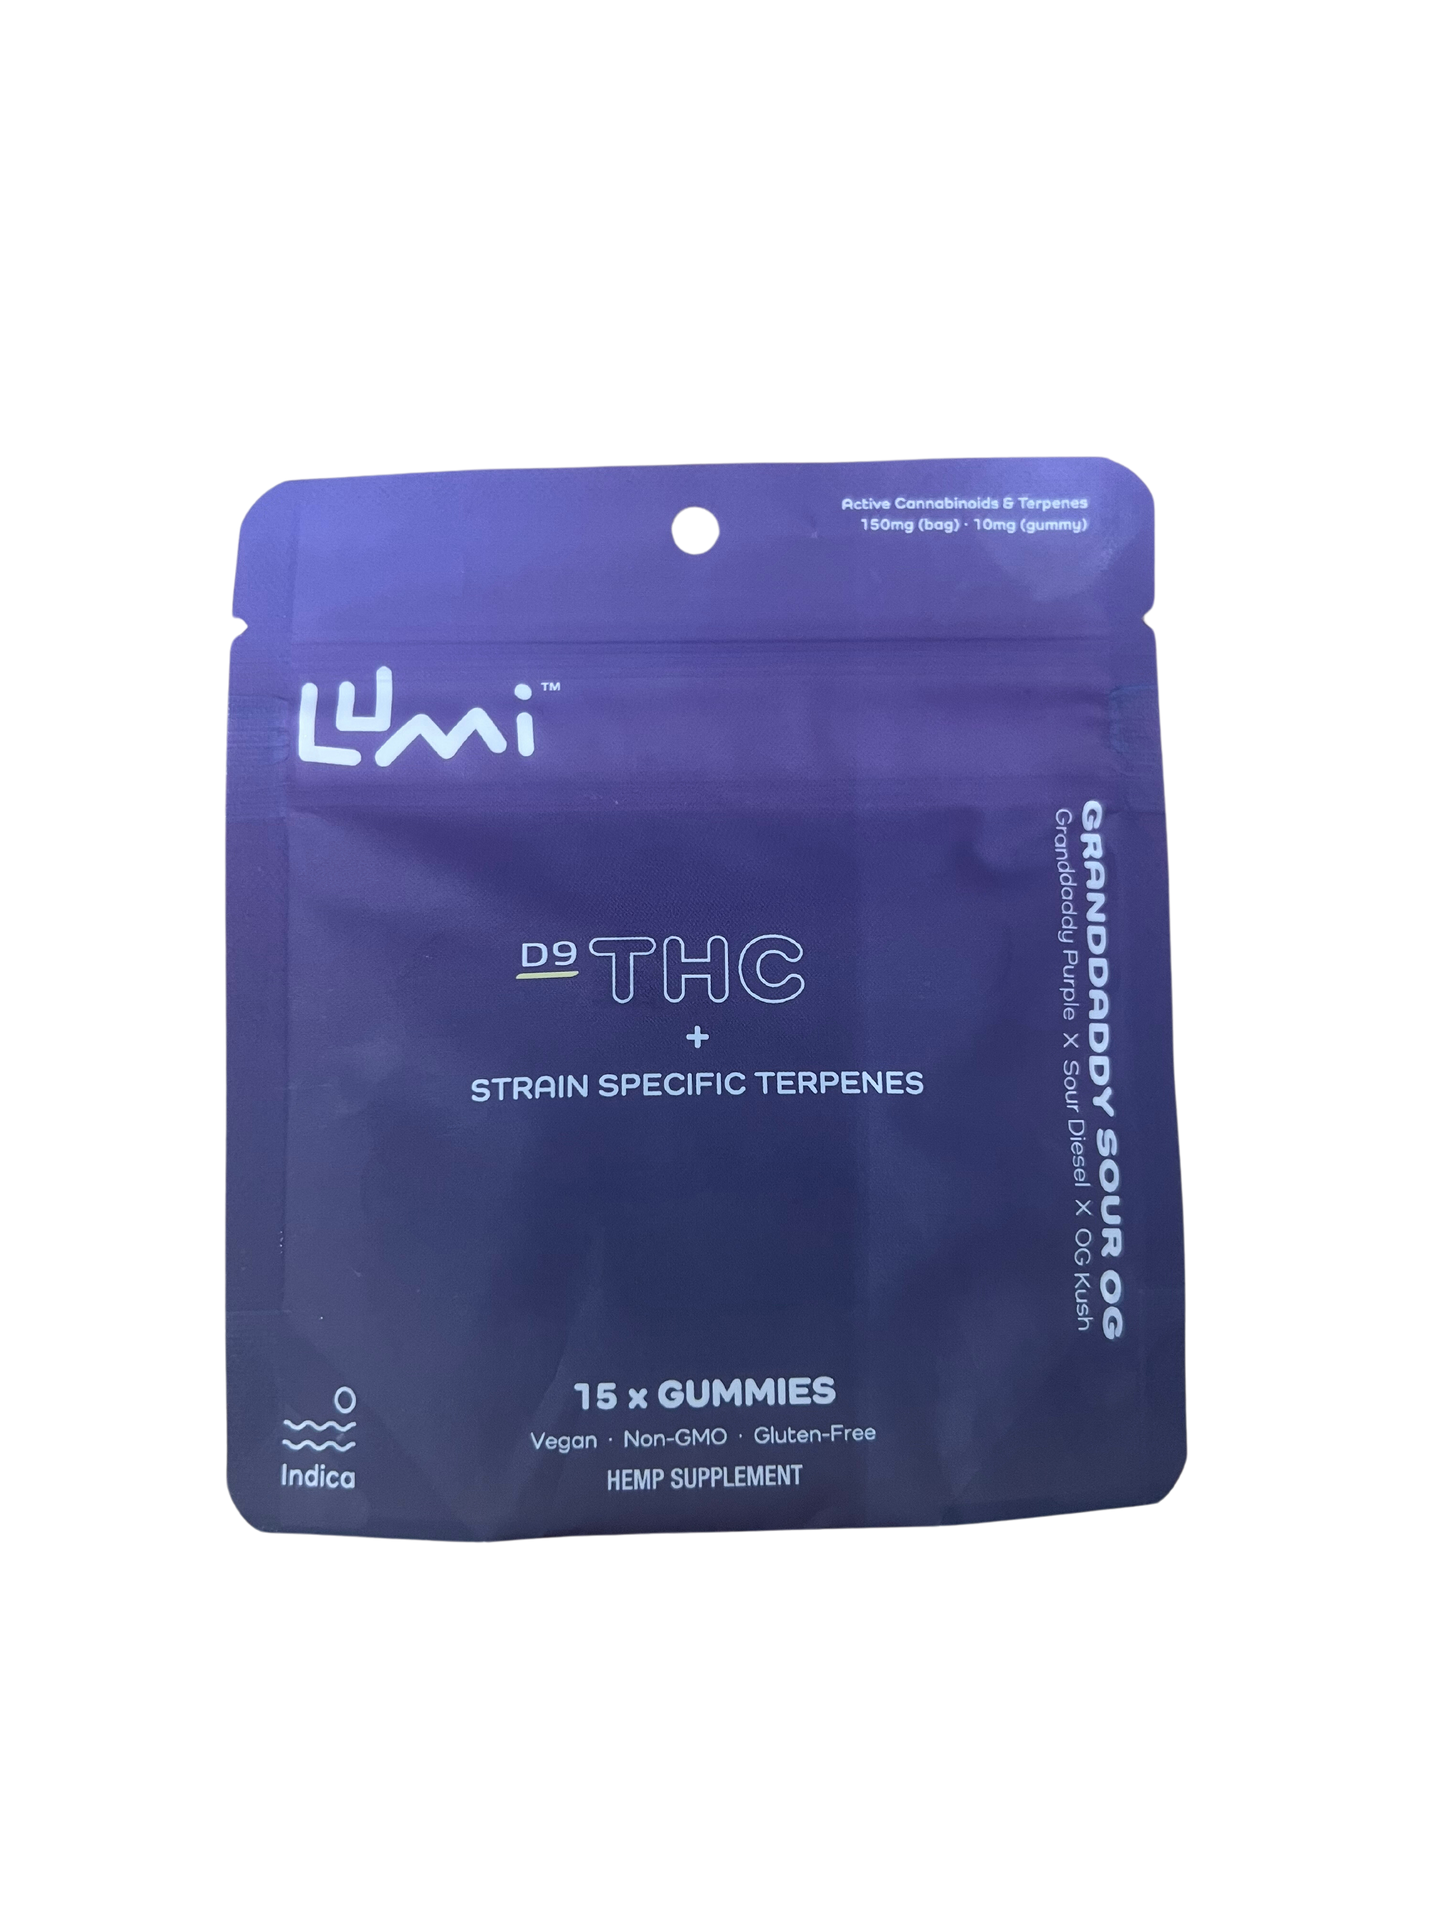 LUMI Delta 9 THC Microdose Vegan Gummies